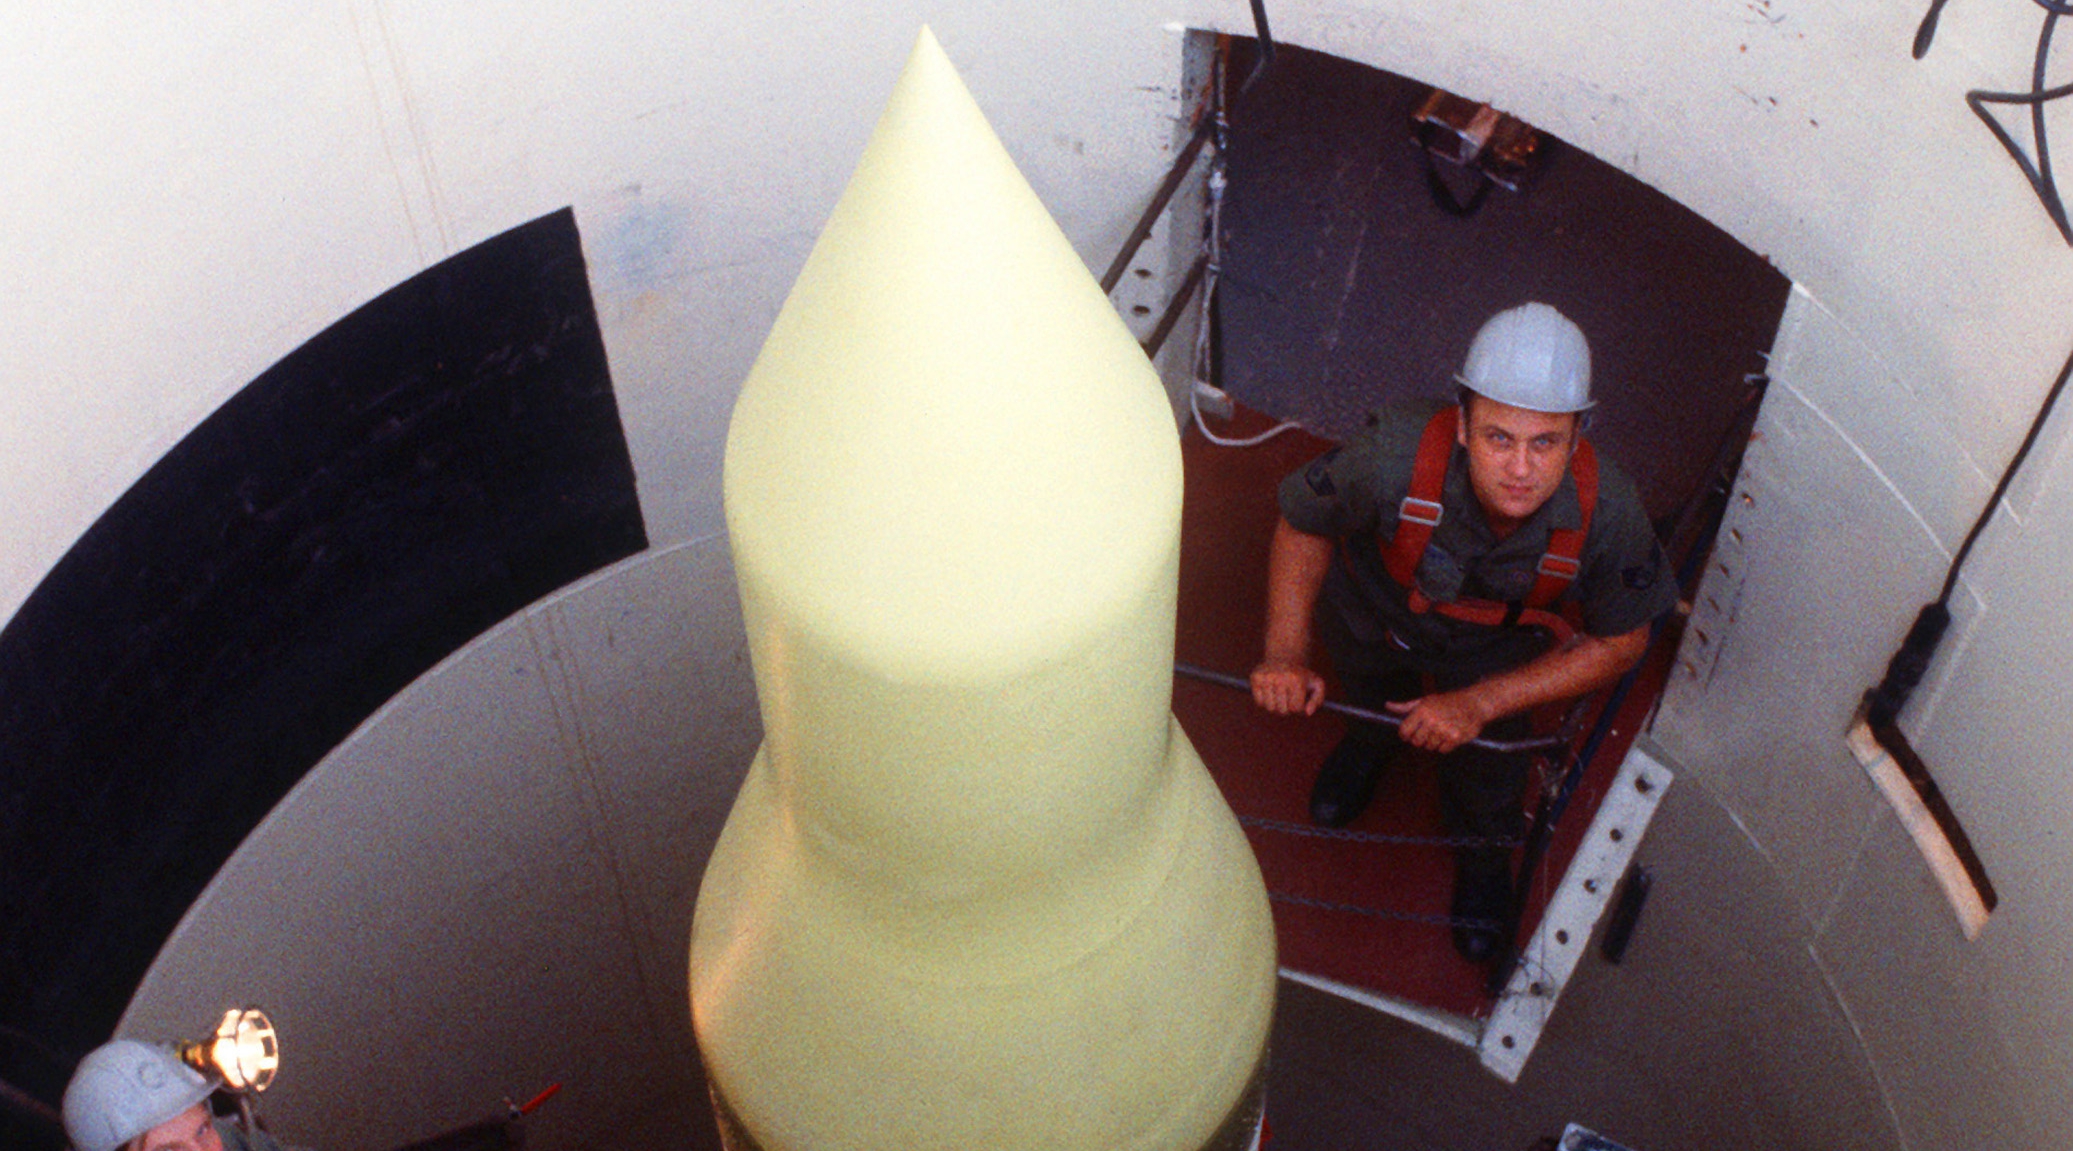 США провели испытание межконтинентальной ракеты Minuteman III